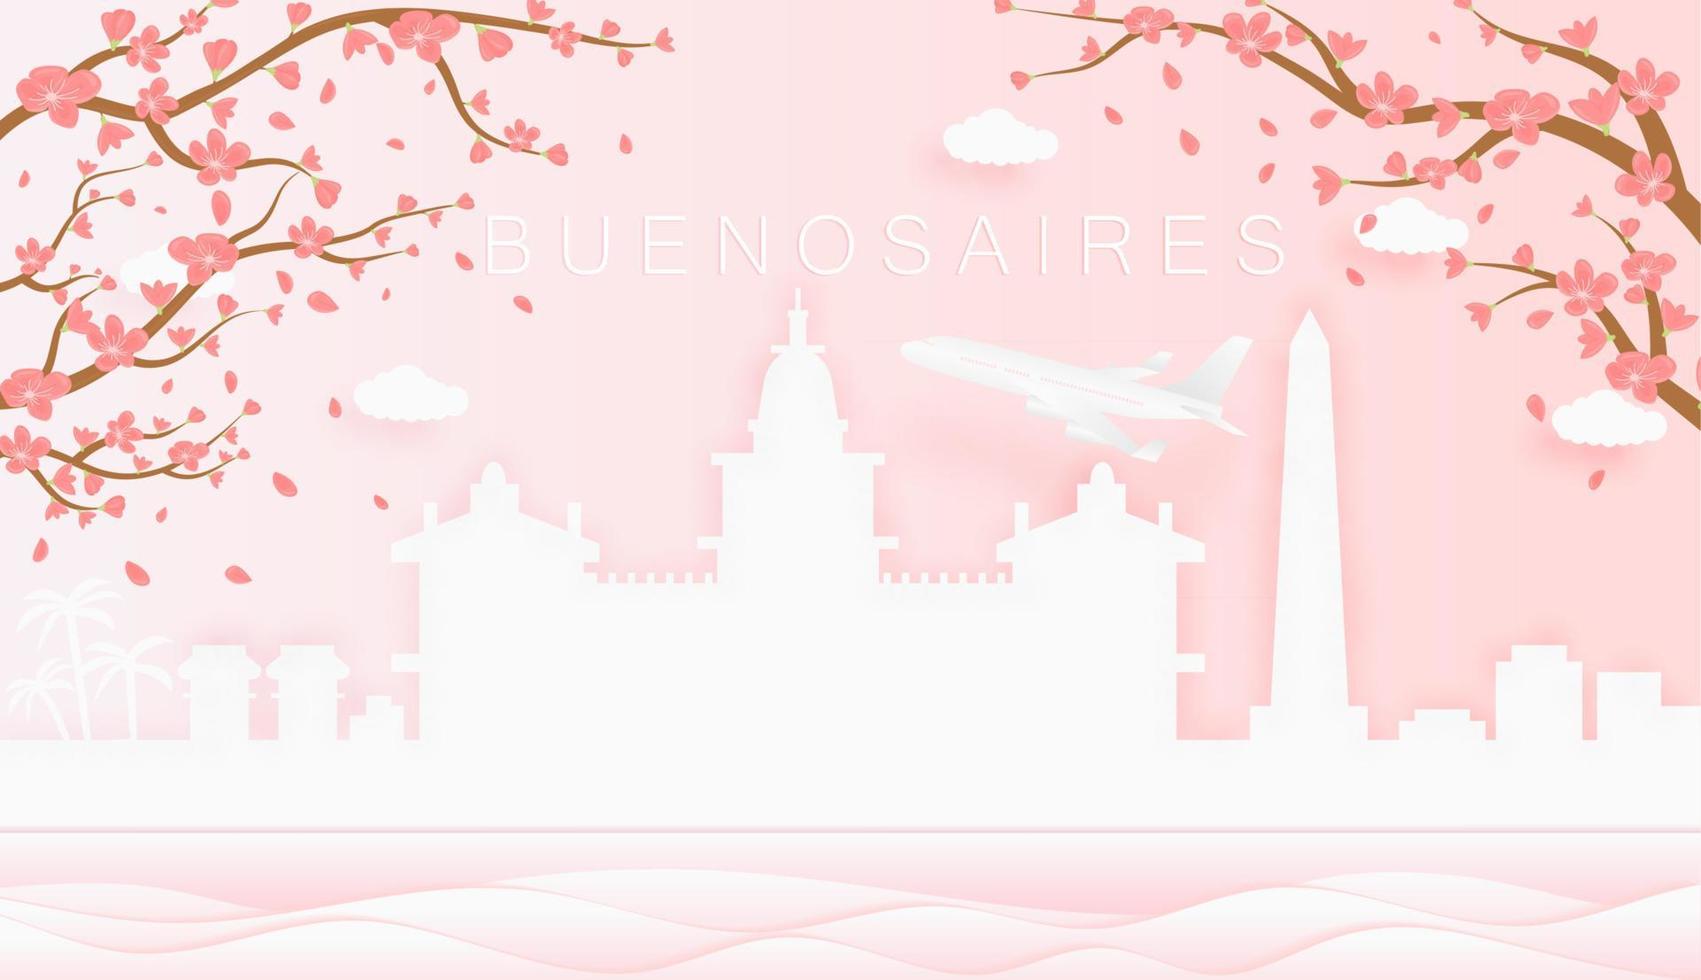 Panorama Reise Postkarte, Poster, Tour Werbung von Welt berühmt Sehenswürdigkeiten von Buenos Lüfte, Frühling Jahreszeit mit Blühen Blumen im Baum vektor